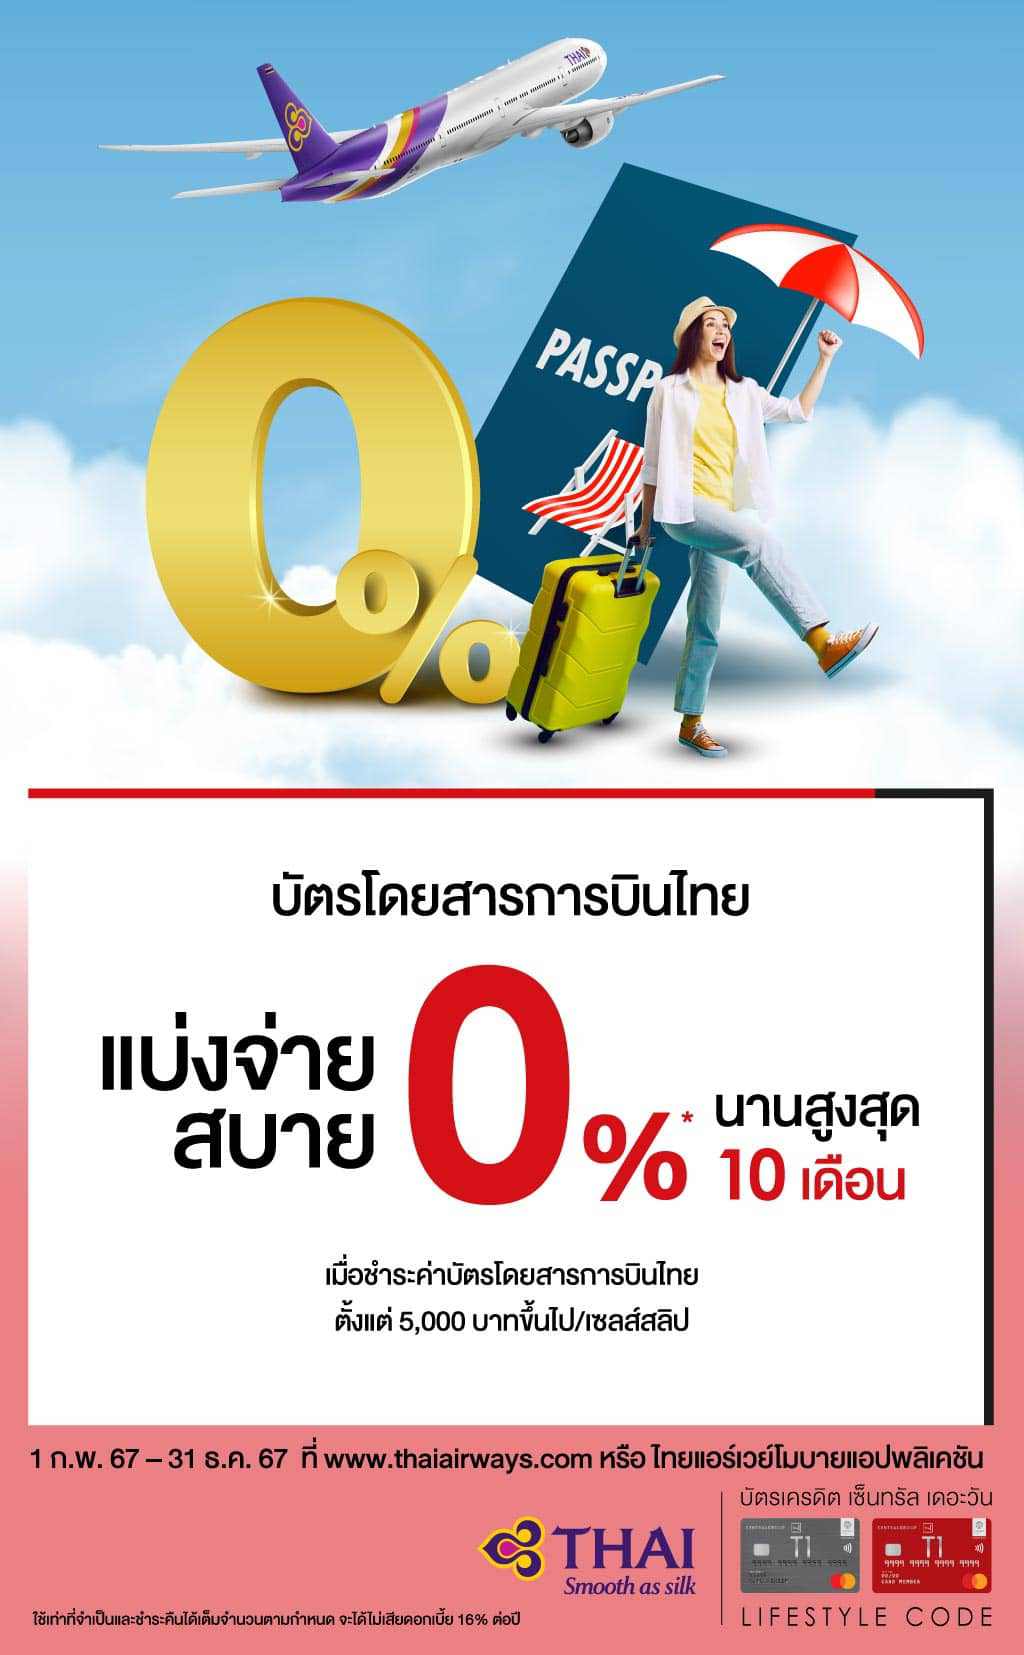 แบ่งจ่ายค่าบัตรโดยสารการบินไทย 0%* นานสูงสุด 10 เดือน ที่ www.thaiairways.com หรือ ไทยแอร์เวย์โมบายแอปพลิเคชัน | บัตรเครดิต | สมัครบัตรเครดิต | สมัครบัตรเครดิตออนไลน์ | สิทธิประโยชน์บัตรเครดิต | สมัครสินเชื่อออนไลน์ | บัตรเครดิต ผ่อน 0% | บัตรเครดิต ใช้ต่างประเทศ | บัตรเครดิต ท่องเที่ยว | บัตรเครดิตเติมน้ำมัน